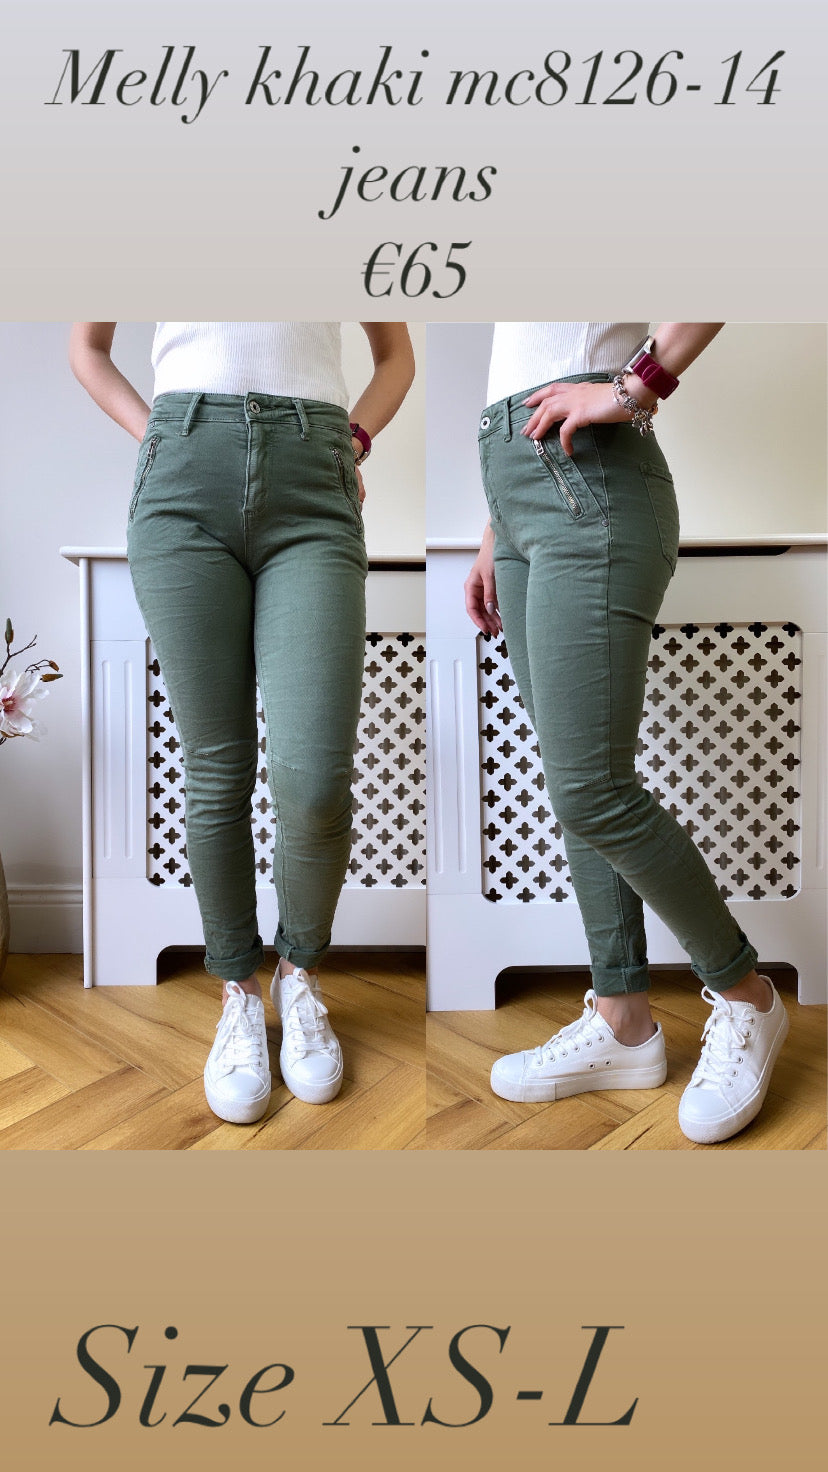 Melly khaki mc8126-14 jeans